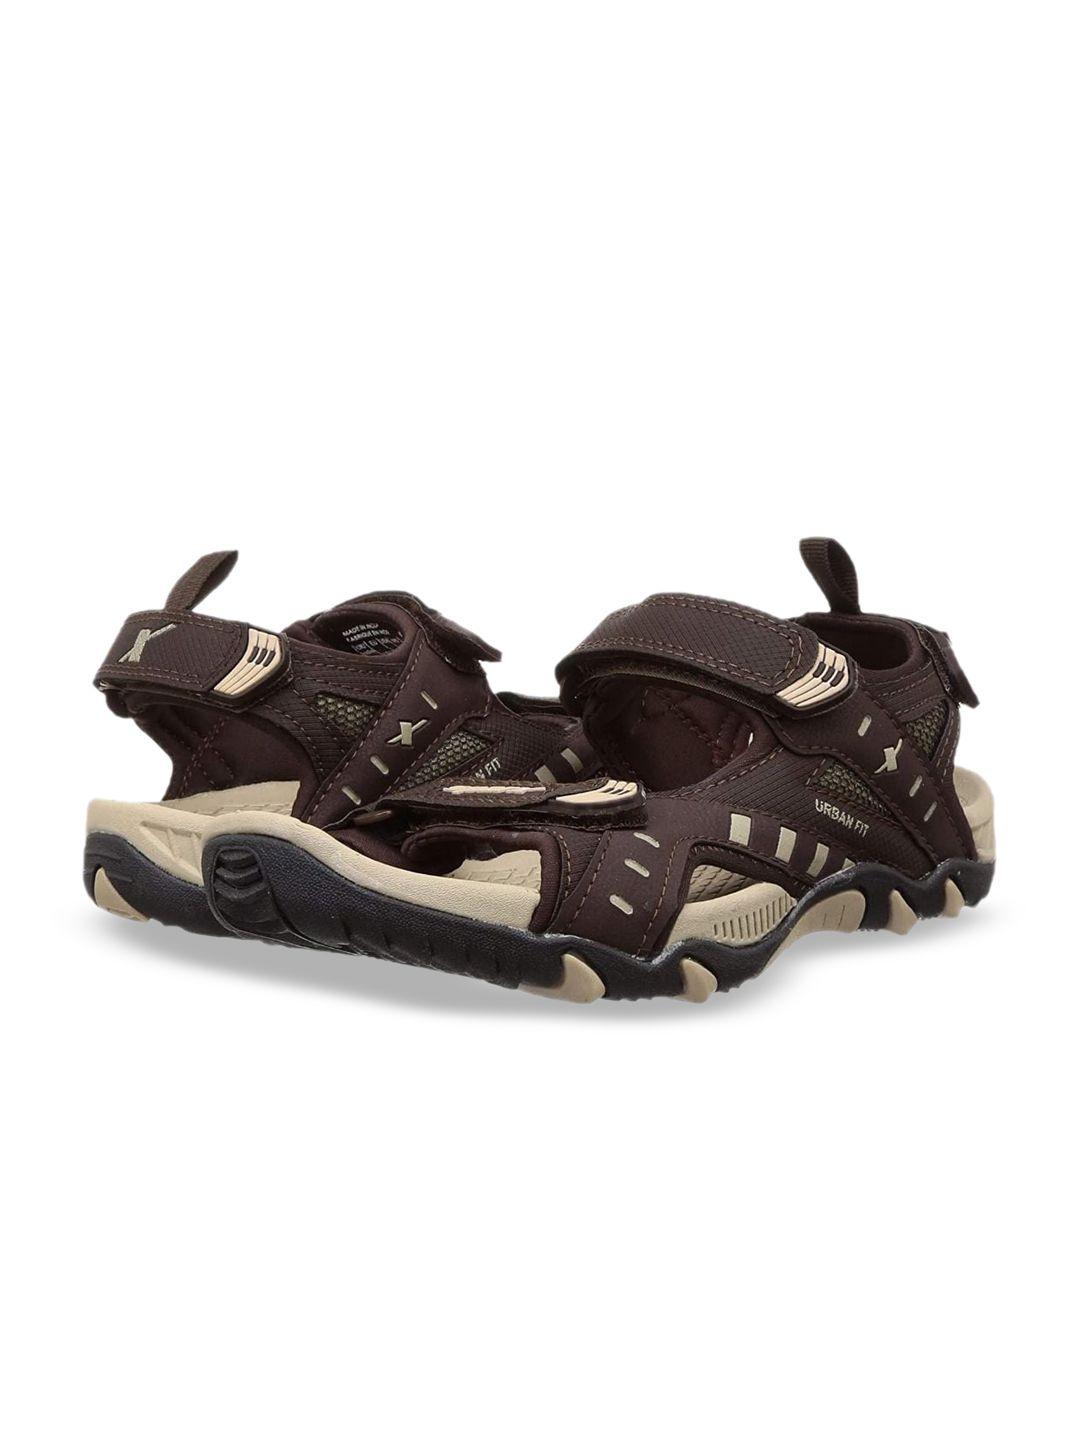 sparx men brown & beige patterned sports sandals